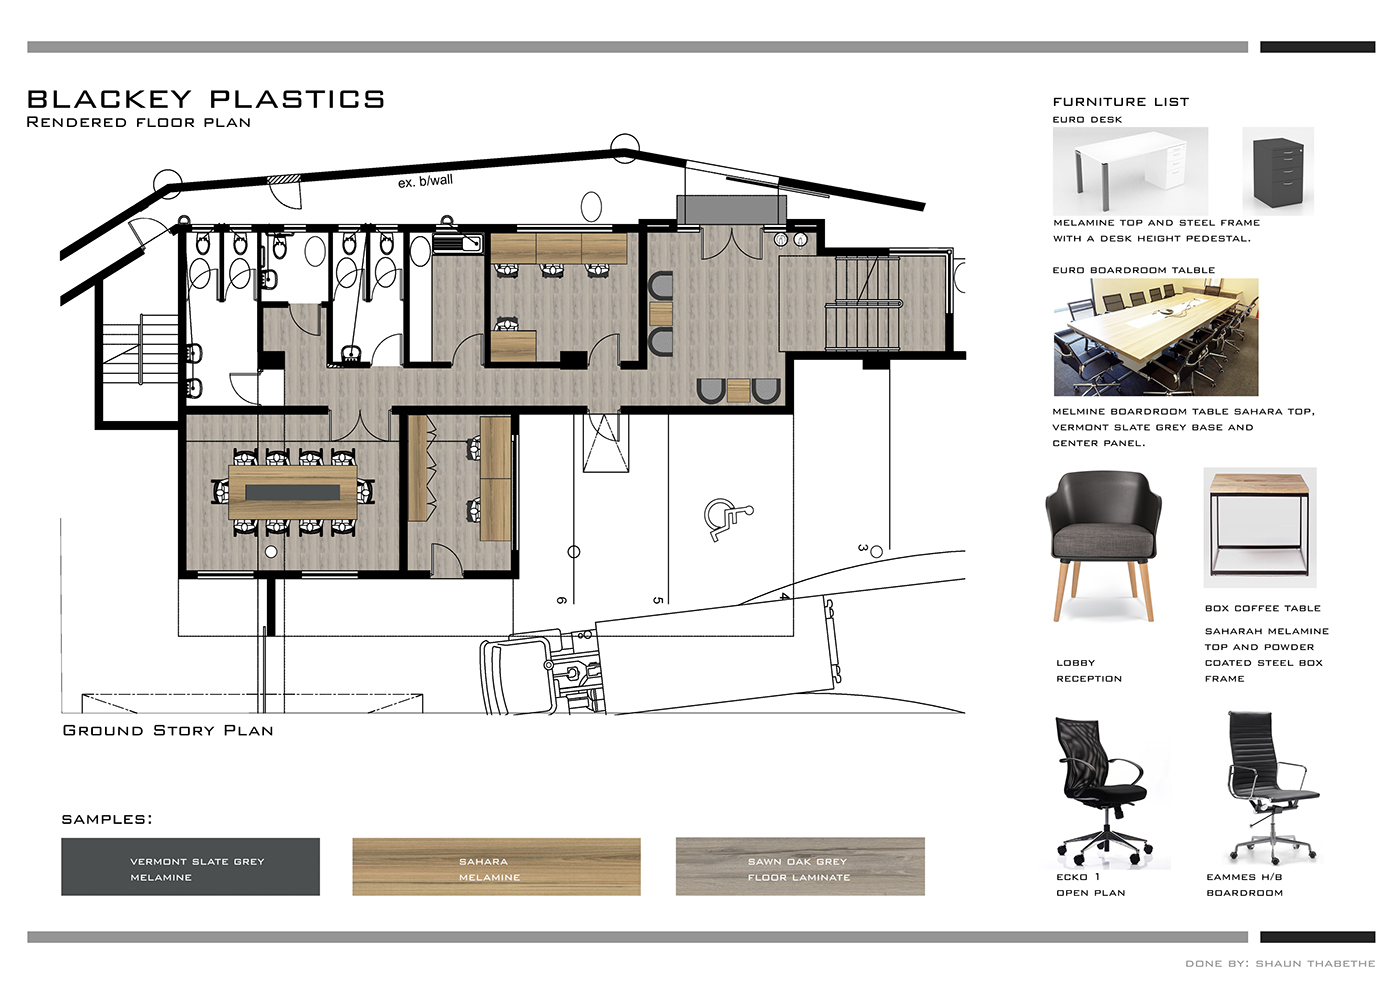 Office Design 3d render office furniture cluster desking